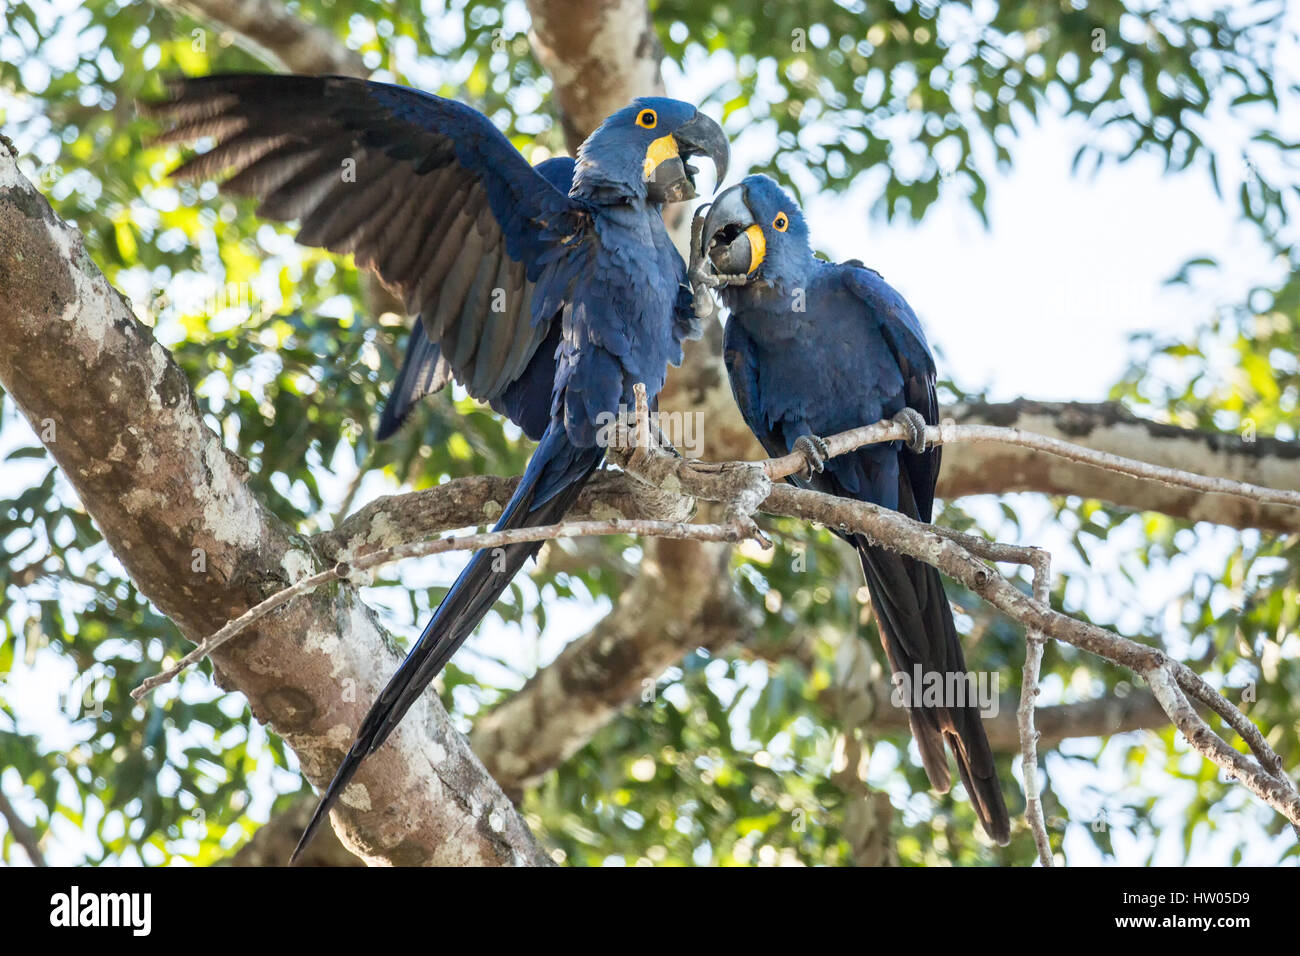 Paire accouplée de Hyacinth Macaws montrer de l'affection qu'ils se percher dans un arbre dans la région du Pantanal, Mato Grosso, Brésil, Amérique du Sud Banque D'Images